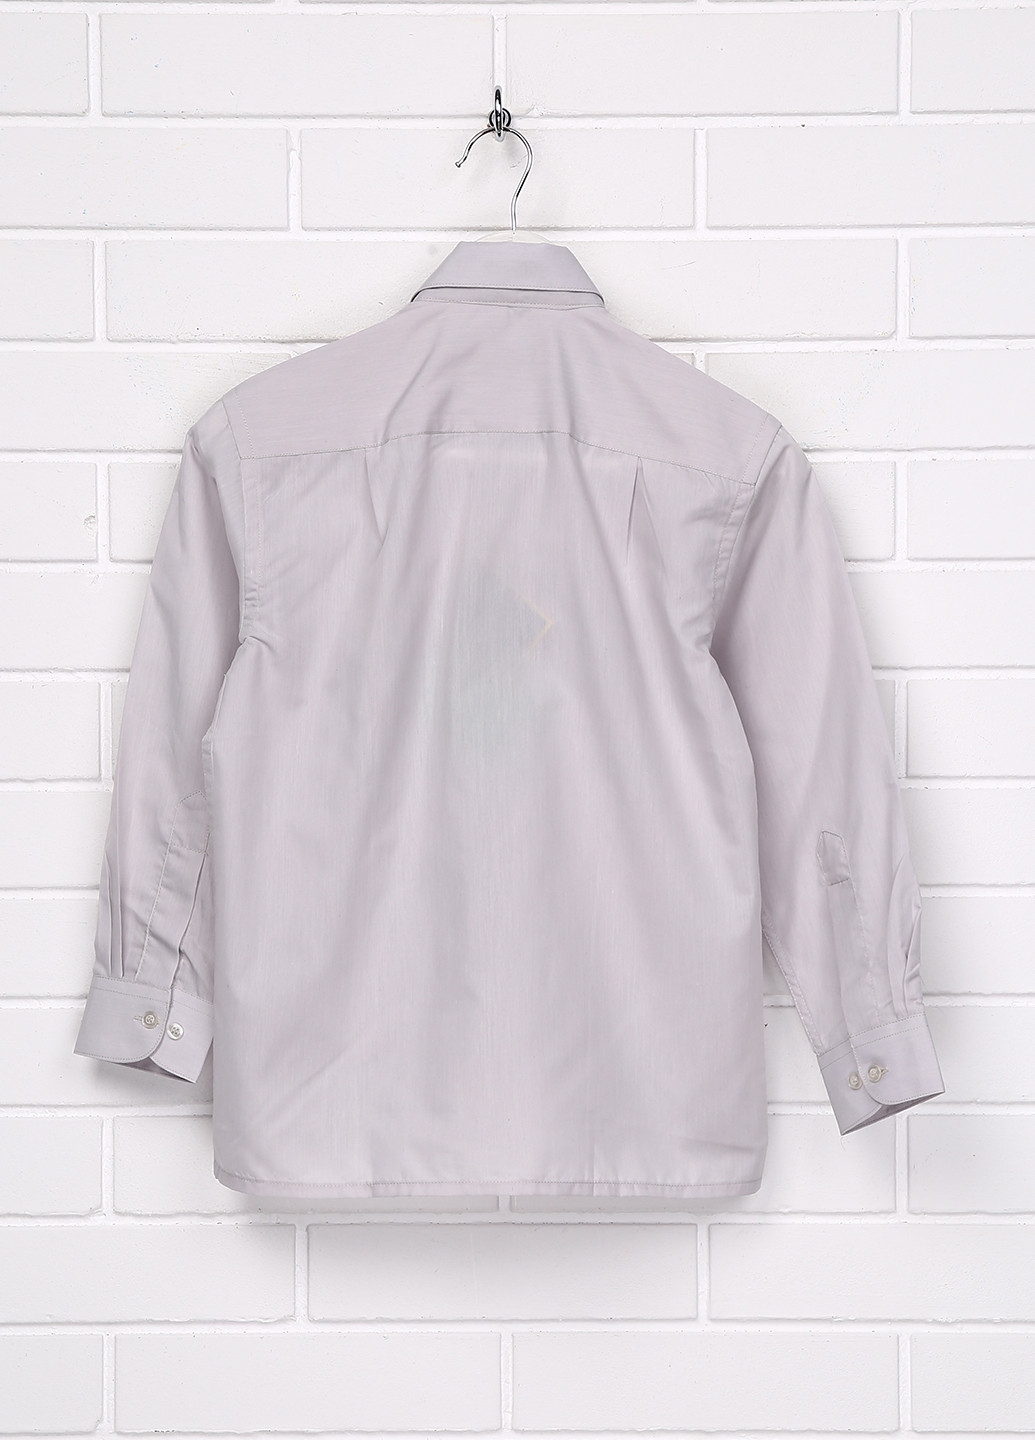 Светло-серая классическая рубашка однотонная Pan Felo с длинным рукавом